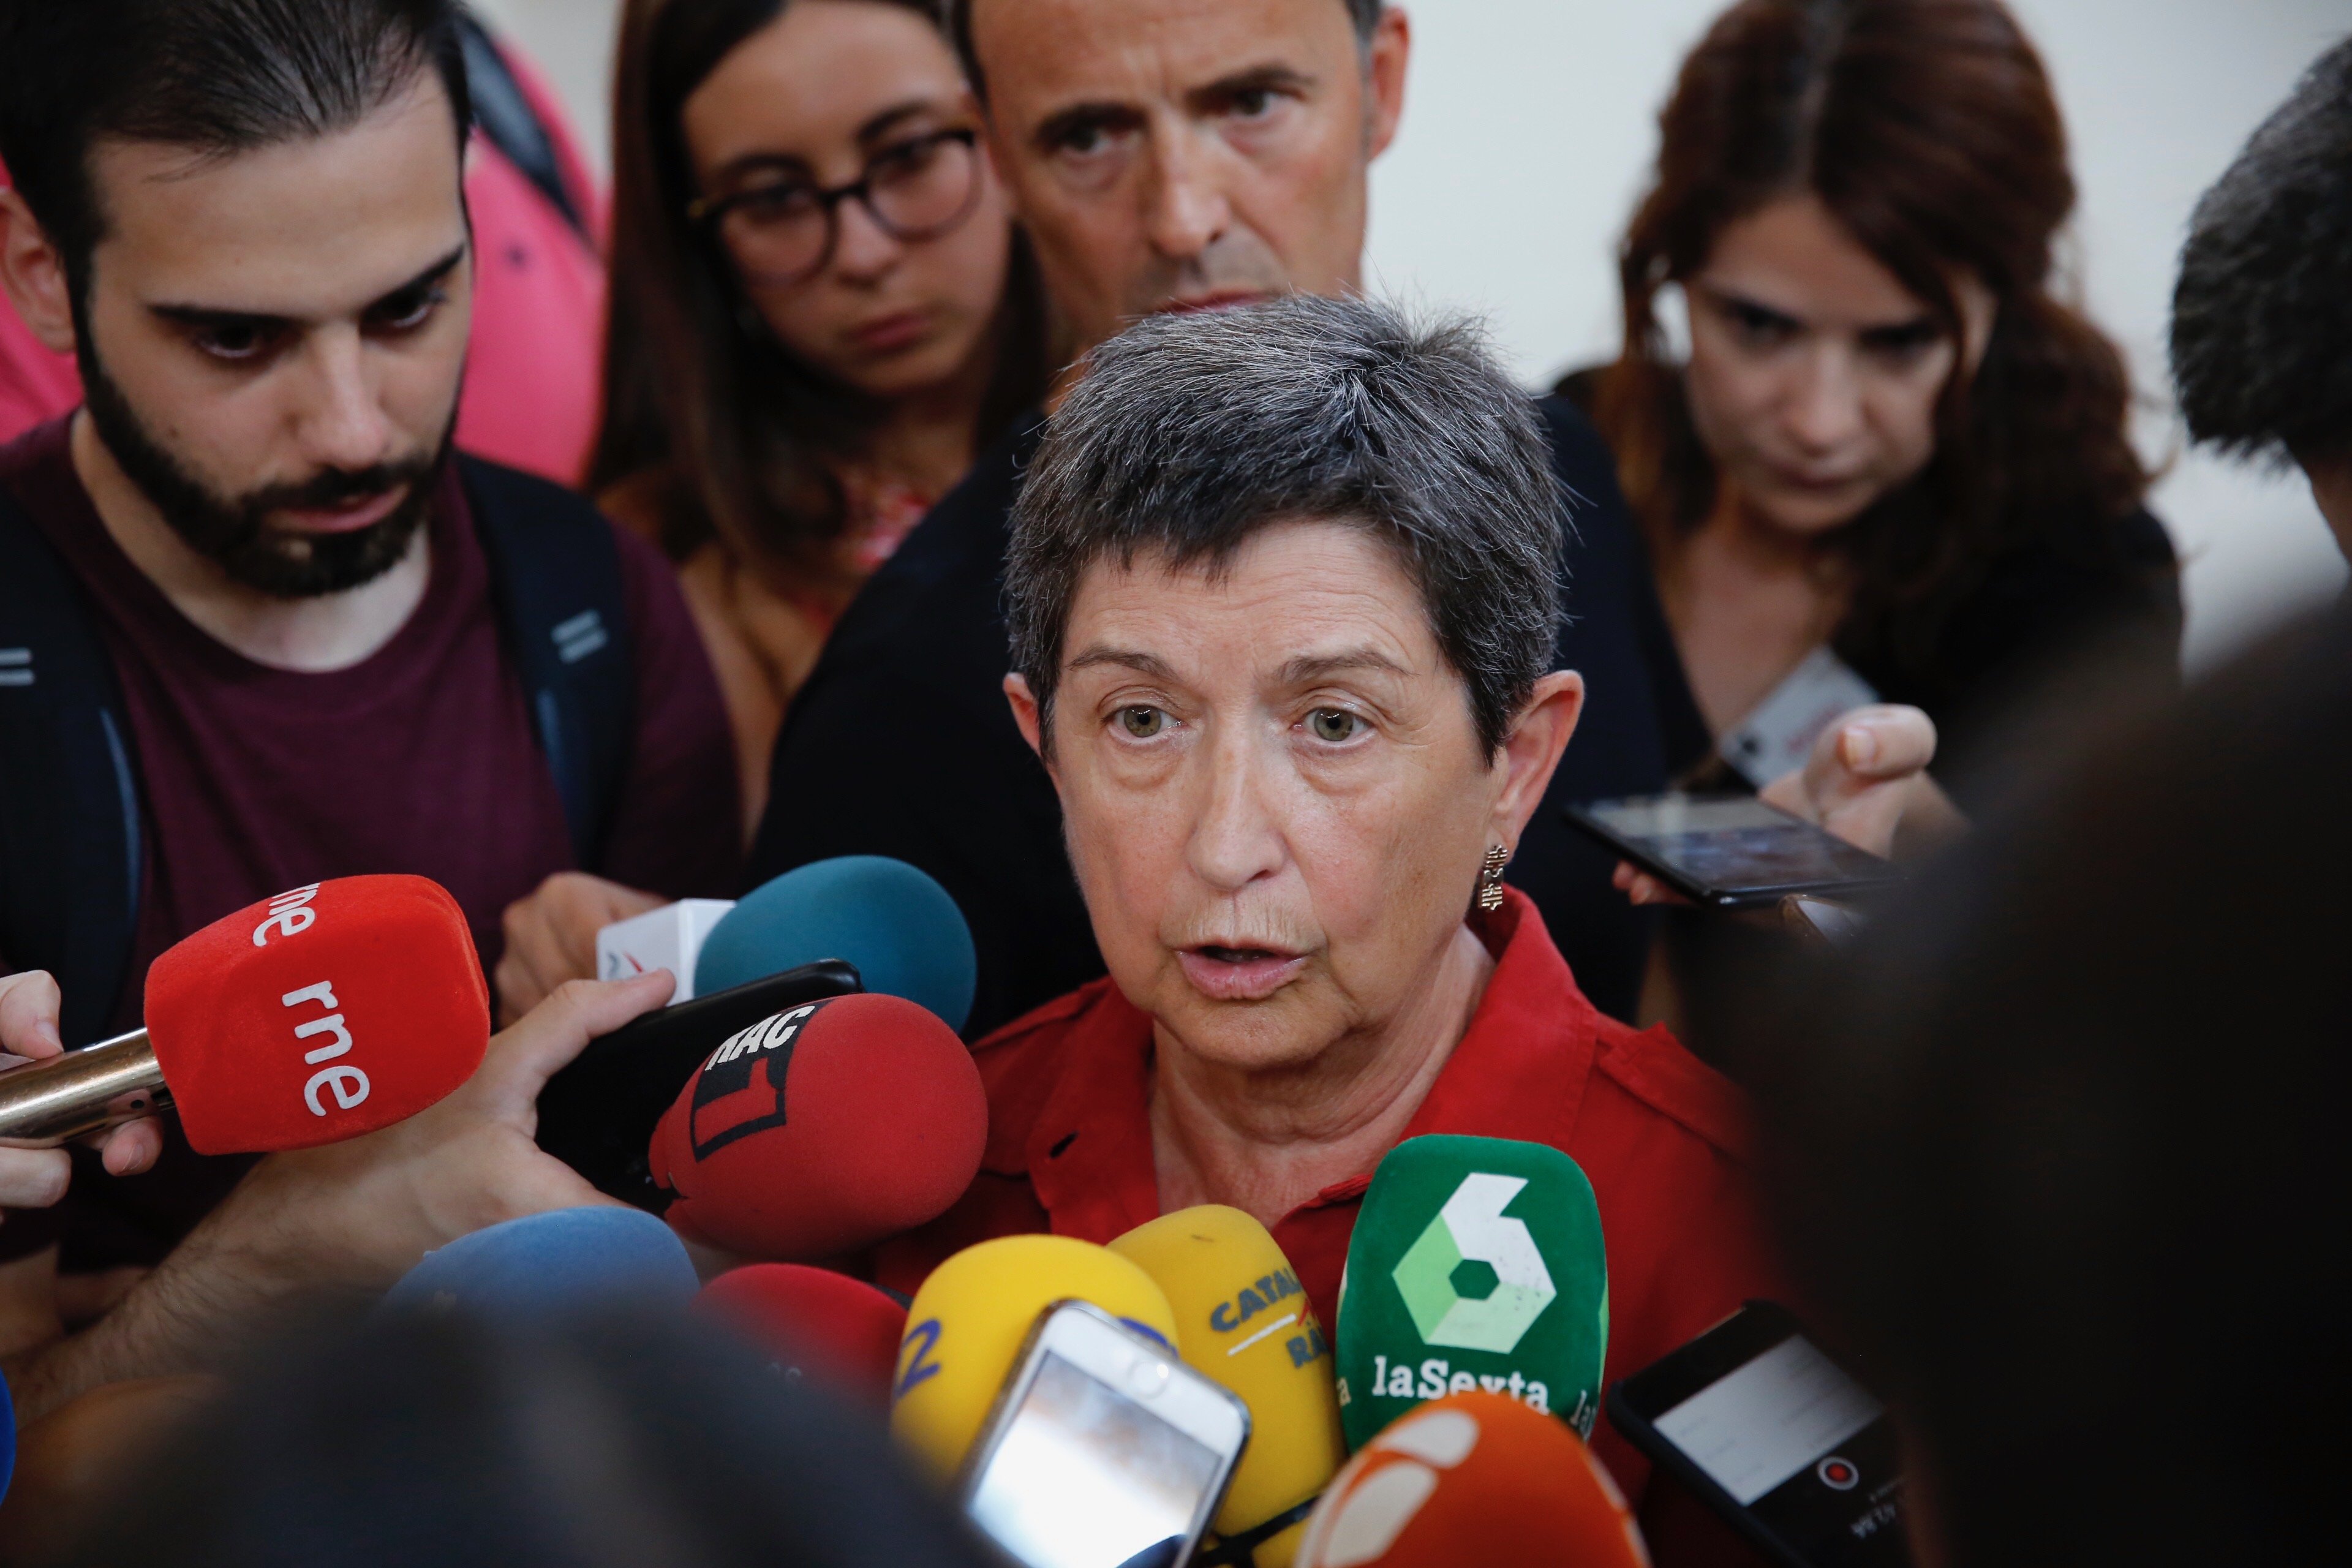 La delegada del govern espanyol respondrà a Torra "quan torni de vacances"